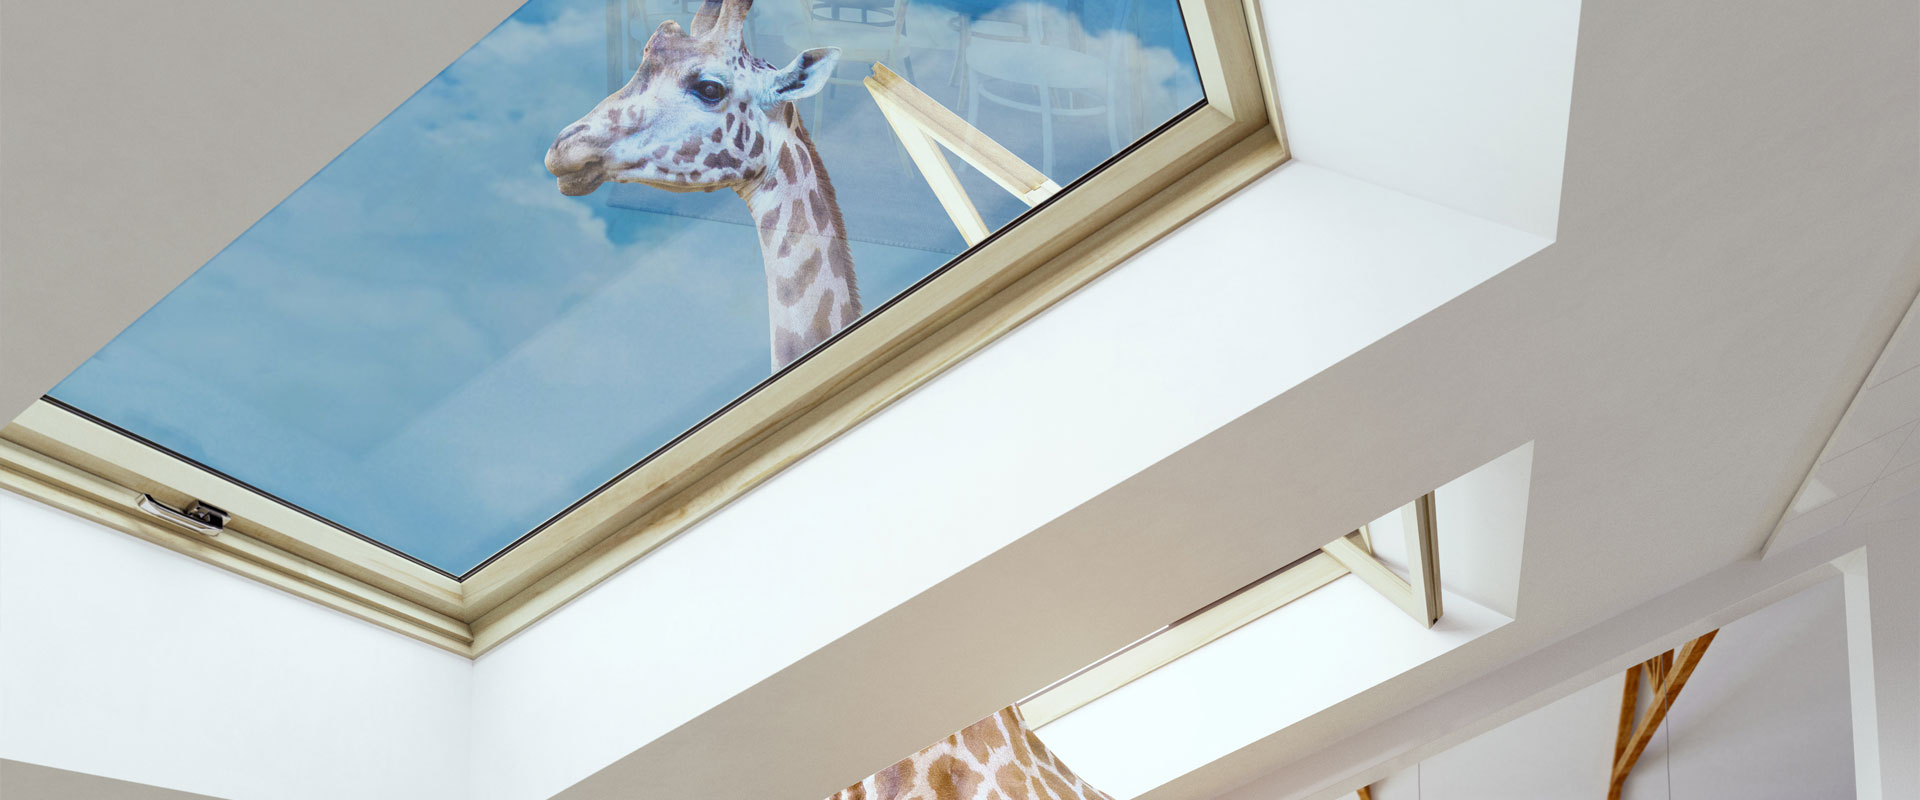 Giraffe streckt Kopf aus dem Fenster